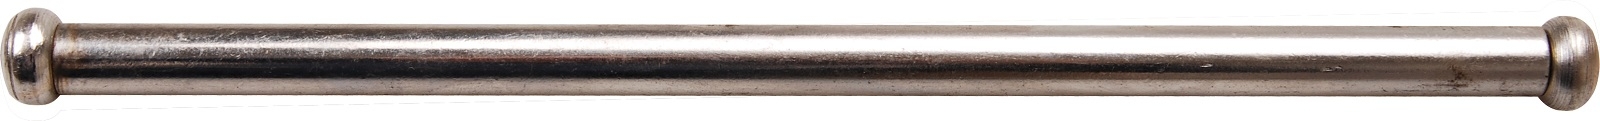 Stahlknebel für Schraubstöcke | 9 x 200 mm - BGS 59003